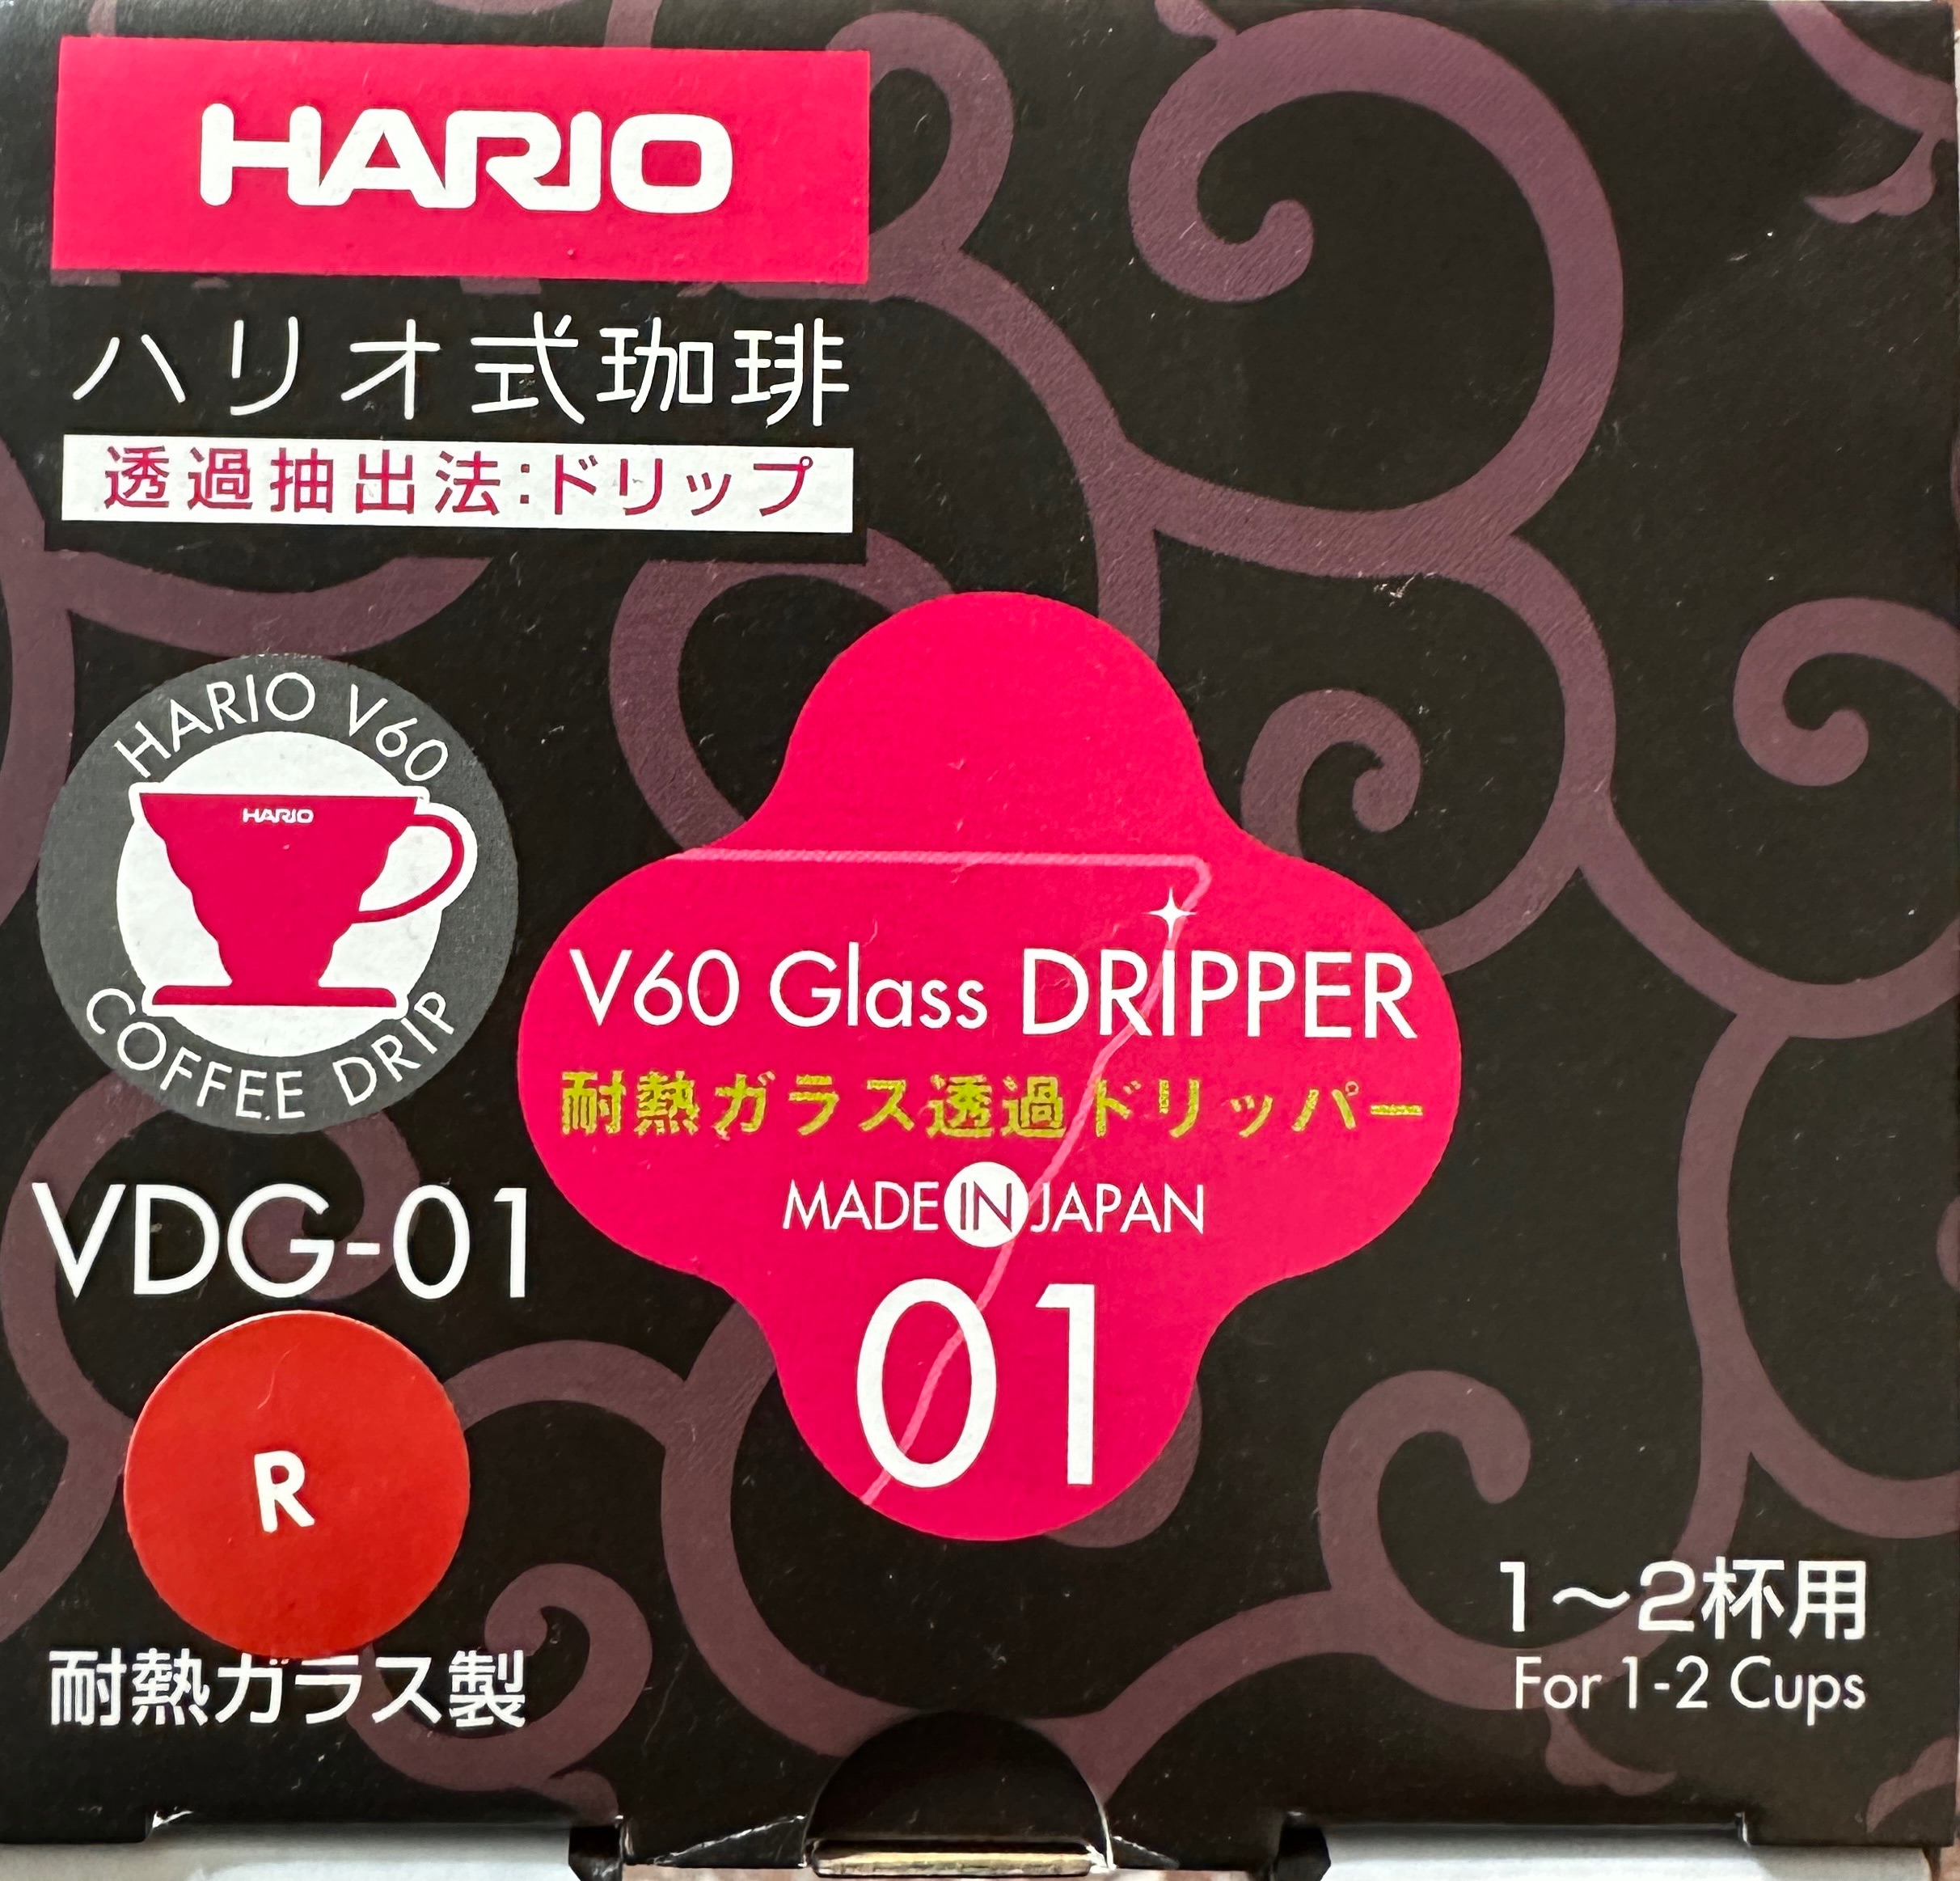 Hario v60 vdg-01r 紅色 全新 日本製